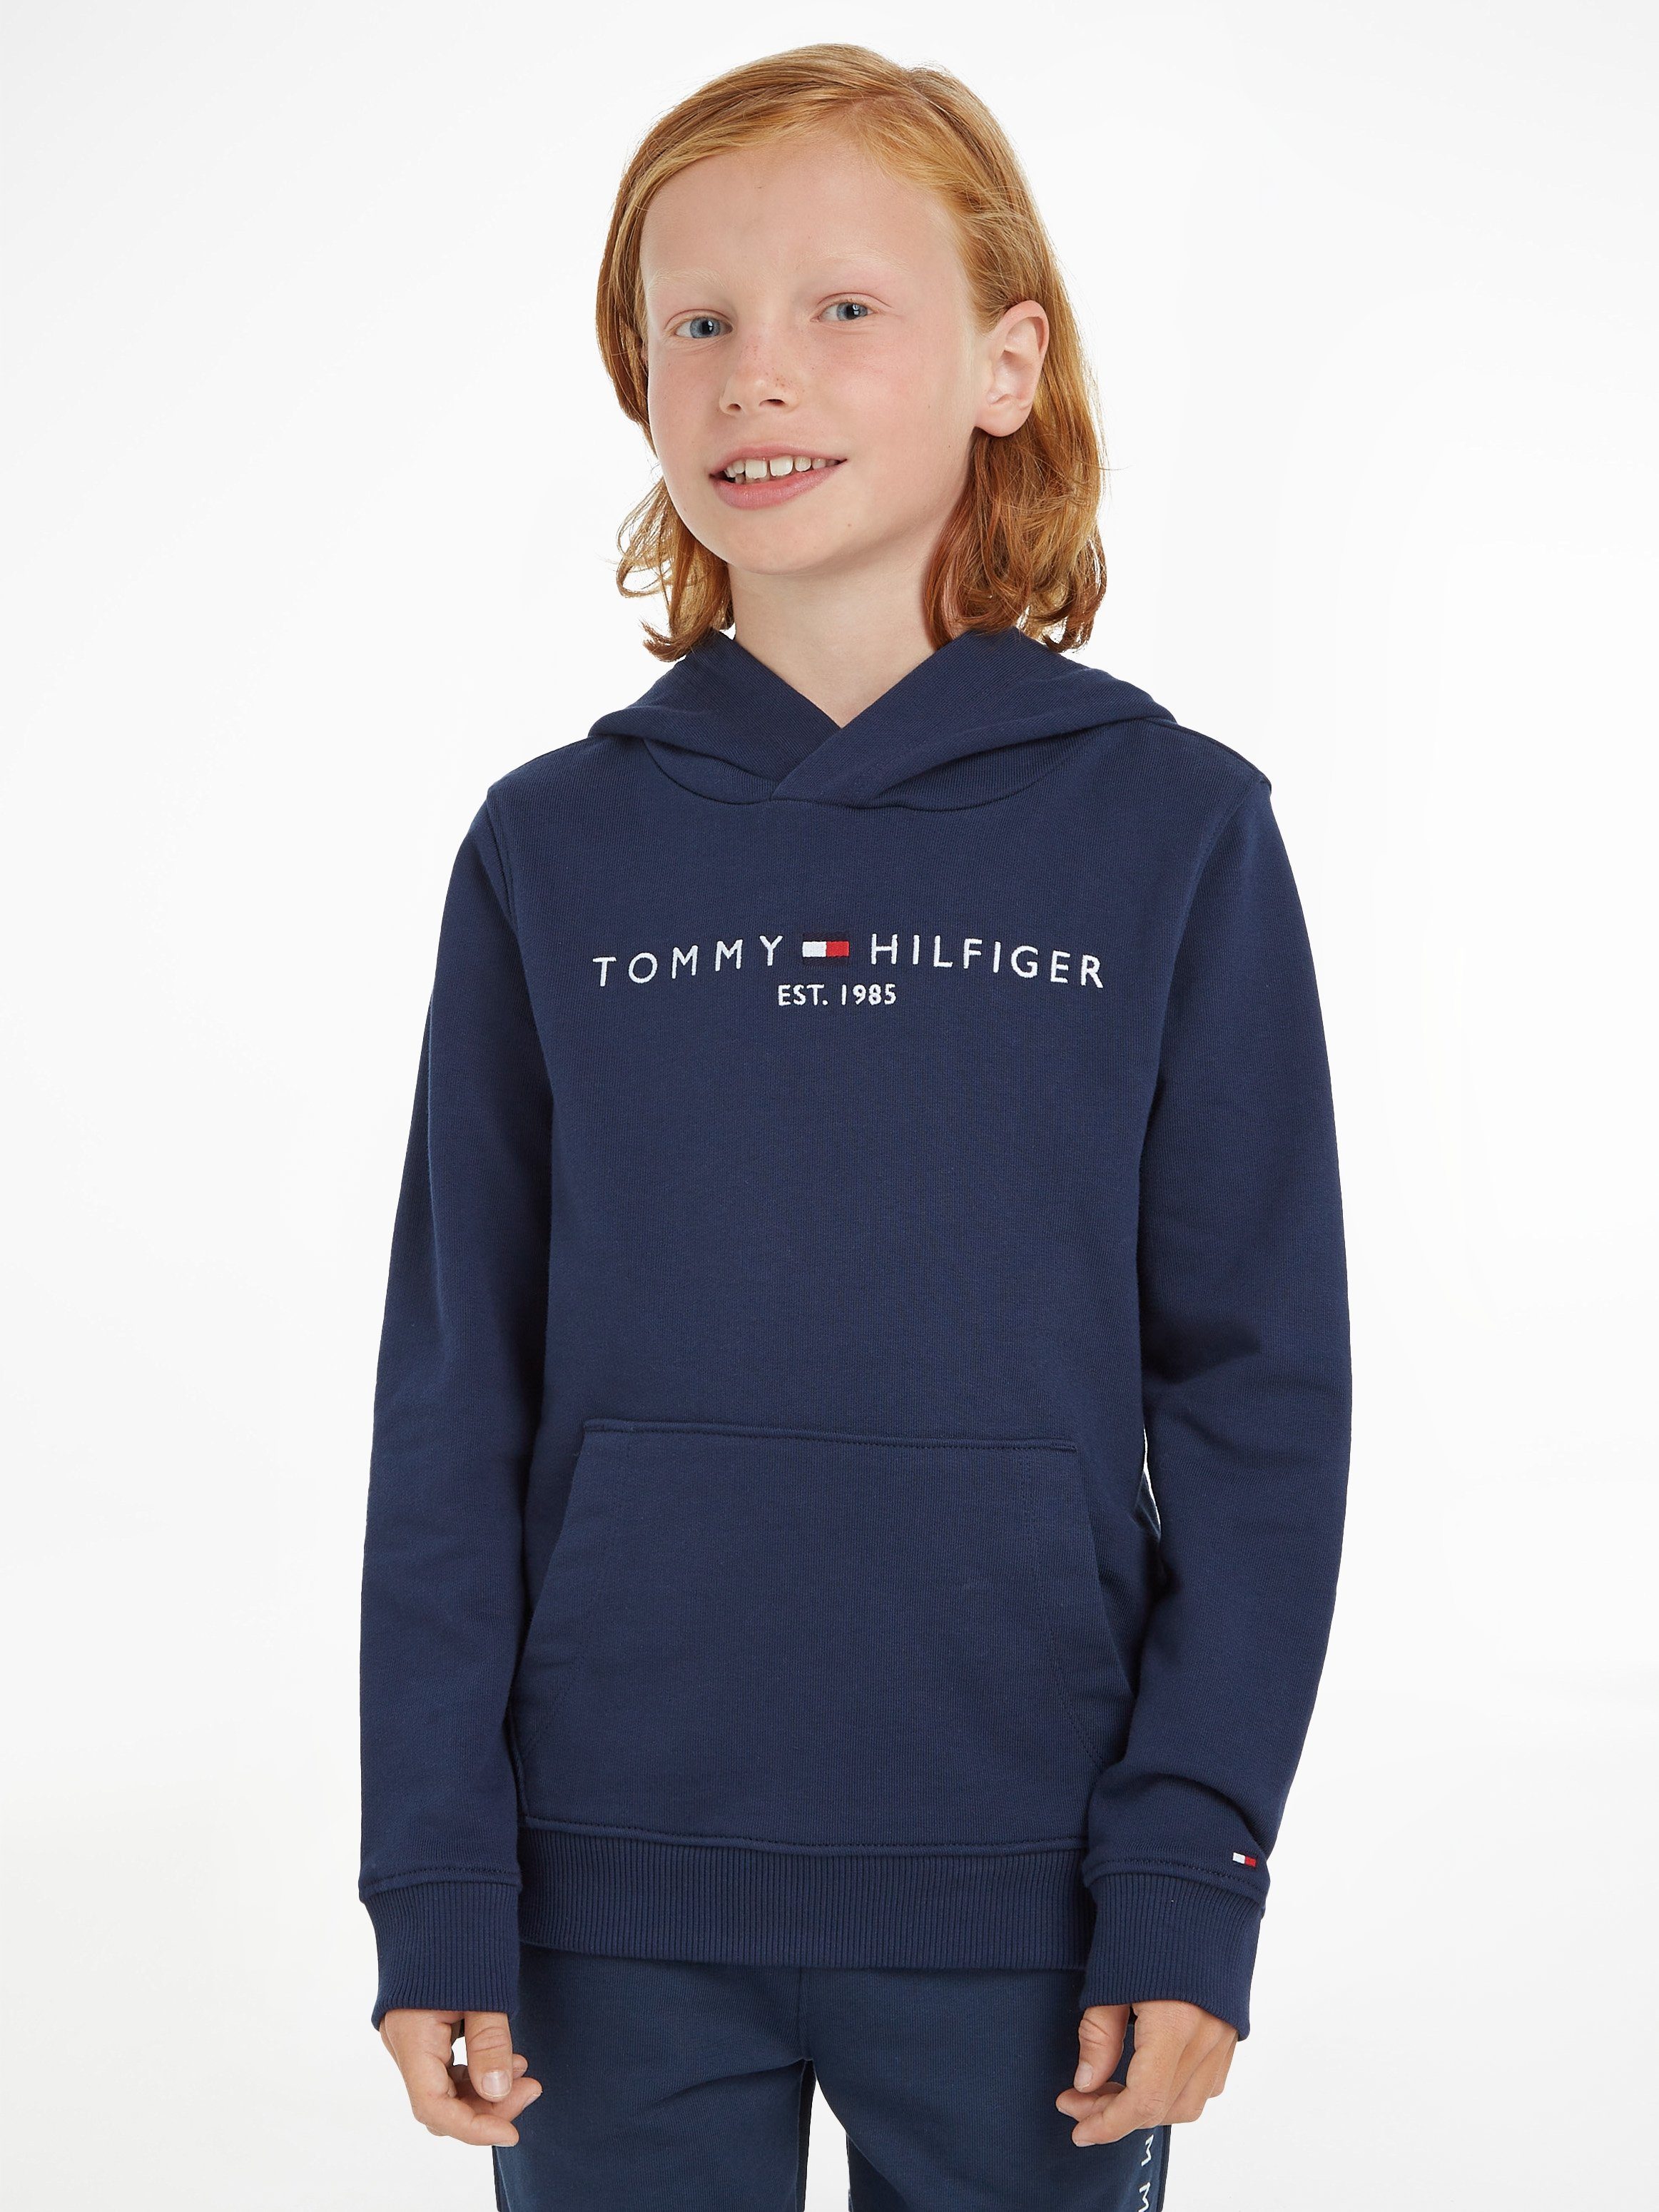 ESSENTIAL HOODIE MiniMe,für Hilfiger Kinder und Mädchen Junior Kapuzensweatshirt Kids Tommy Jungen